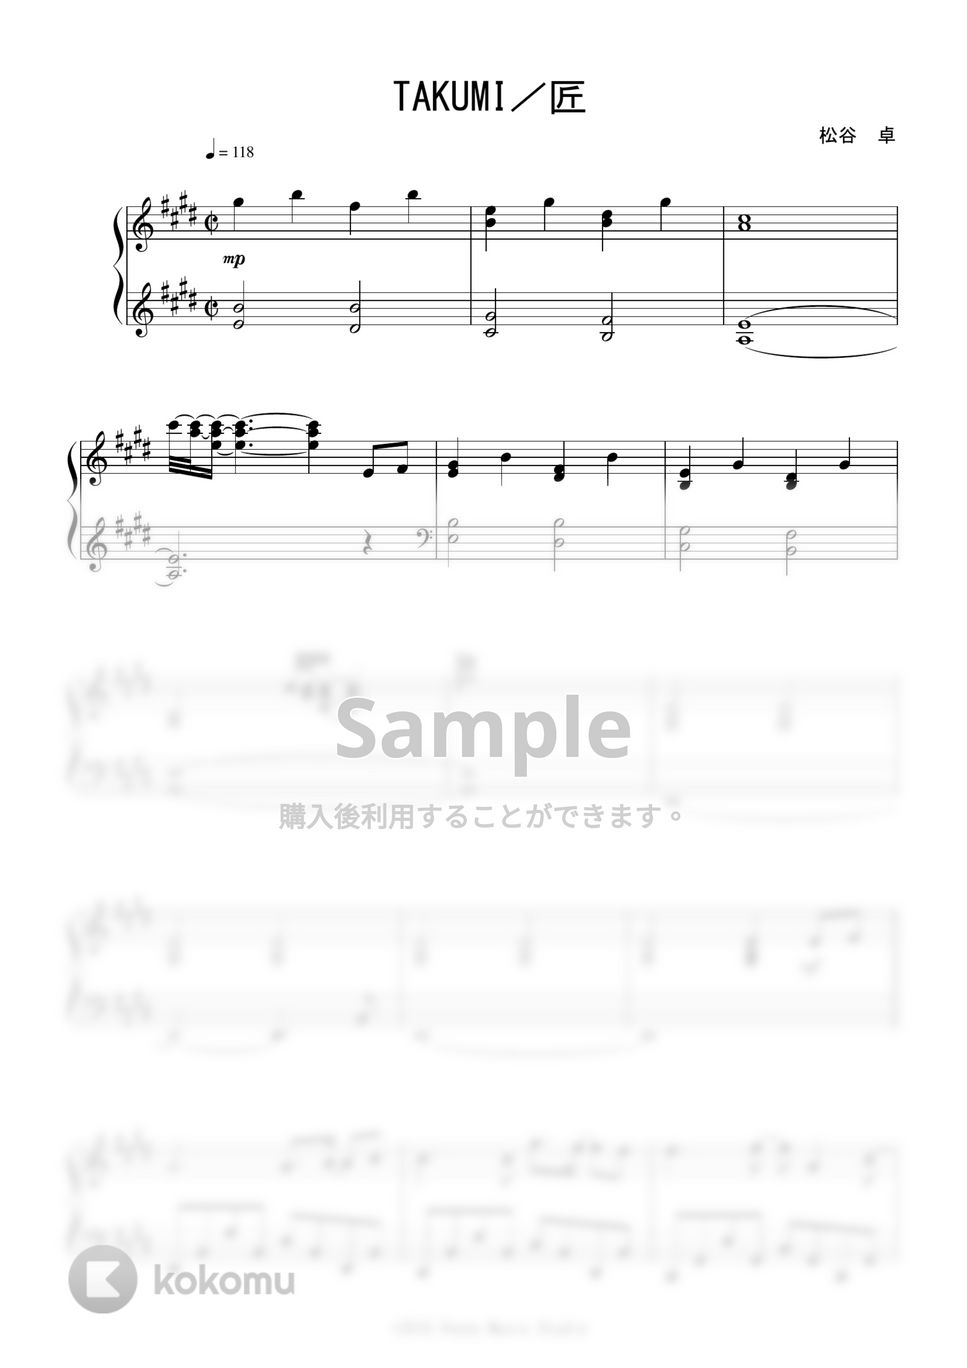 松谷 卓 - TAKUMI/匠 (「大改造! 劇的ビフォーアフター」OST) by Peony